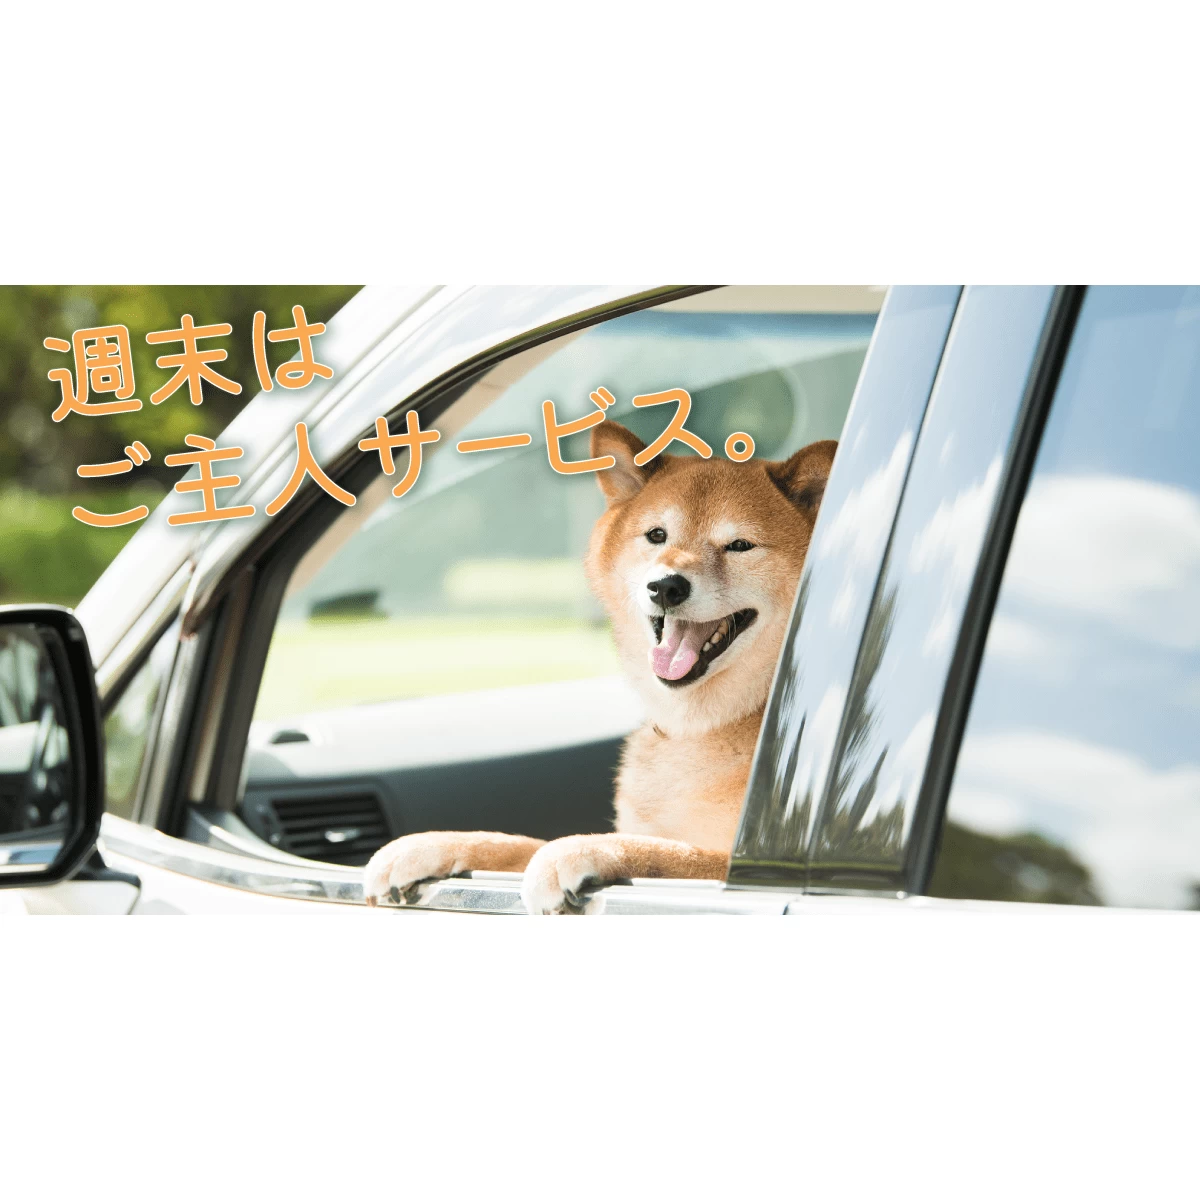 愛犬を連れて静岡観光 絶景を巡る日帰り旅行 みんなの旅プラン 旅色 旅行プランは旅色で